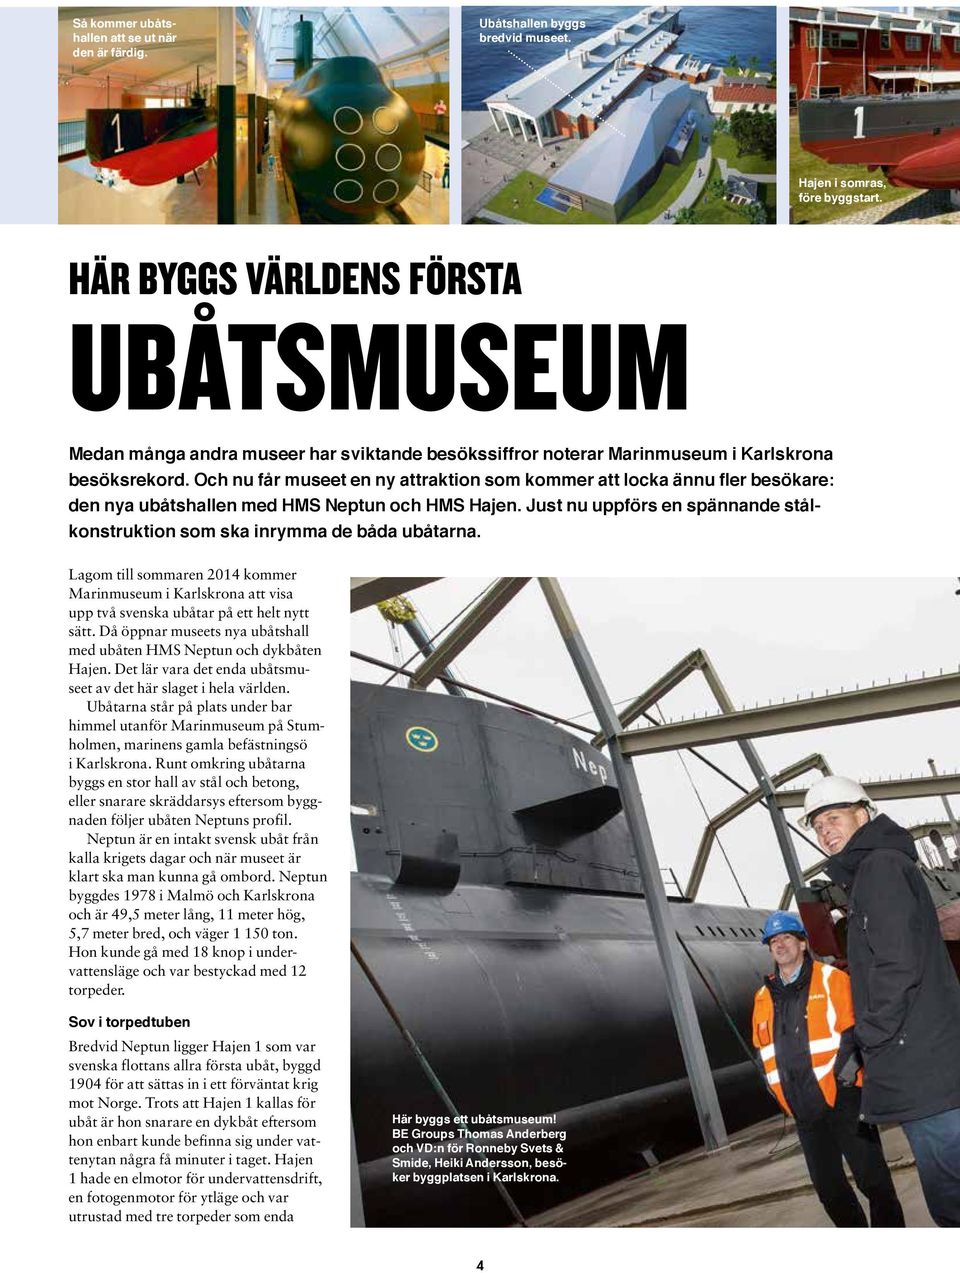 Och nu får museet en ny attraktion som kommer att locka ännu fler besökare: den nya ubåtshallen med HMS Neptun och HMS Hajen.